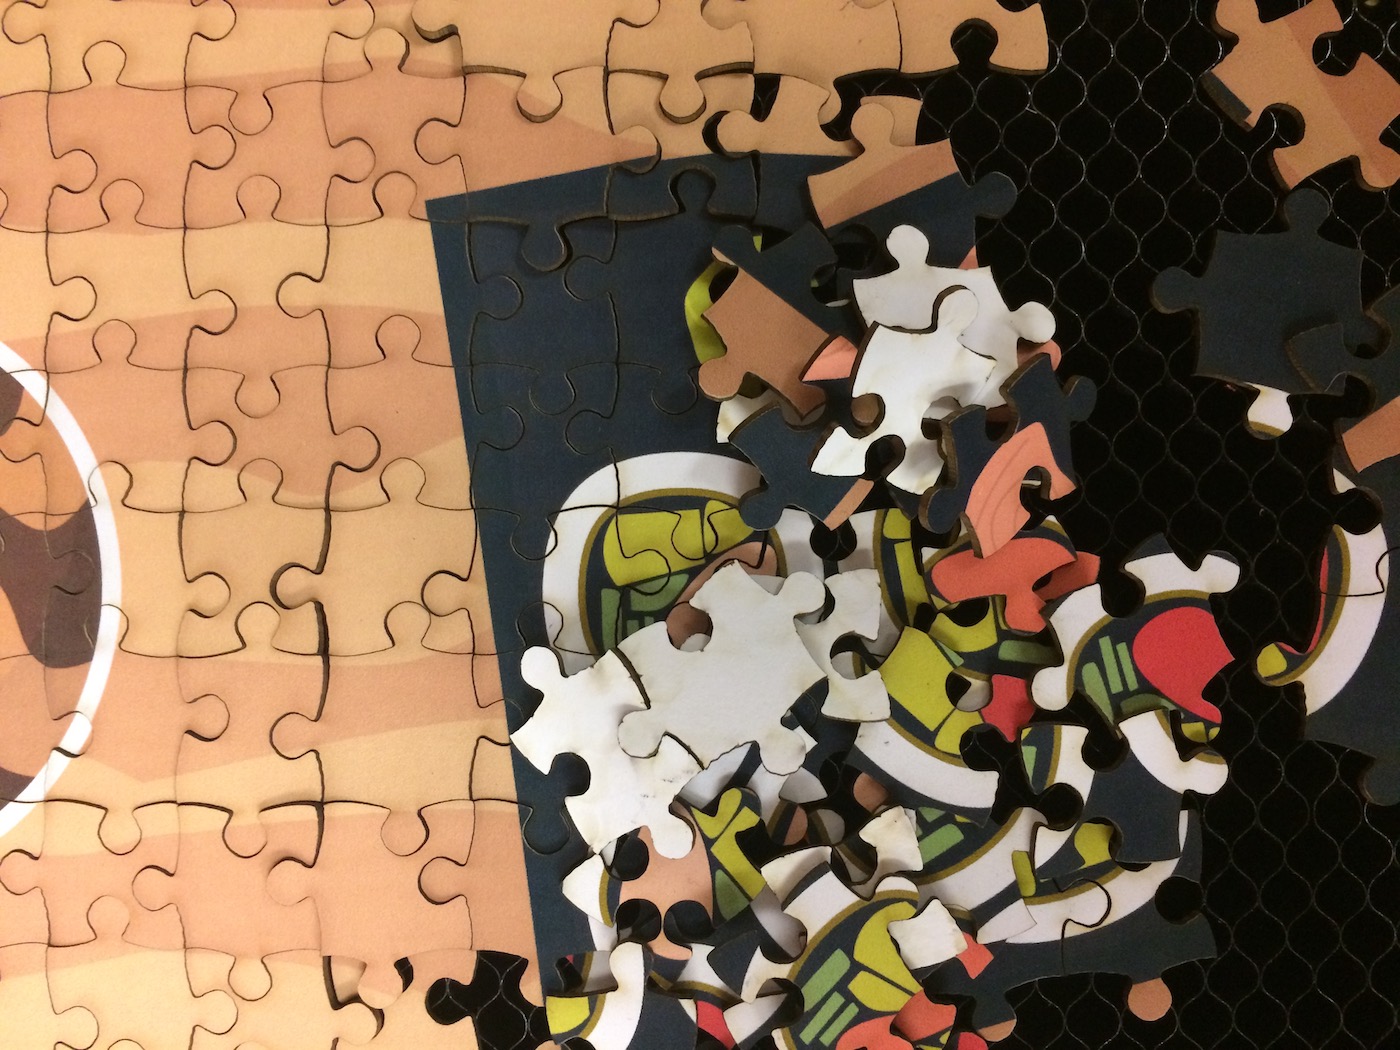 Lasercut puzzle removal